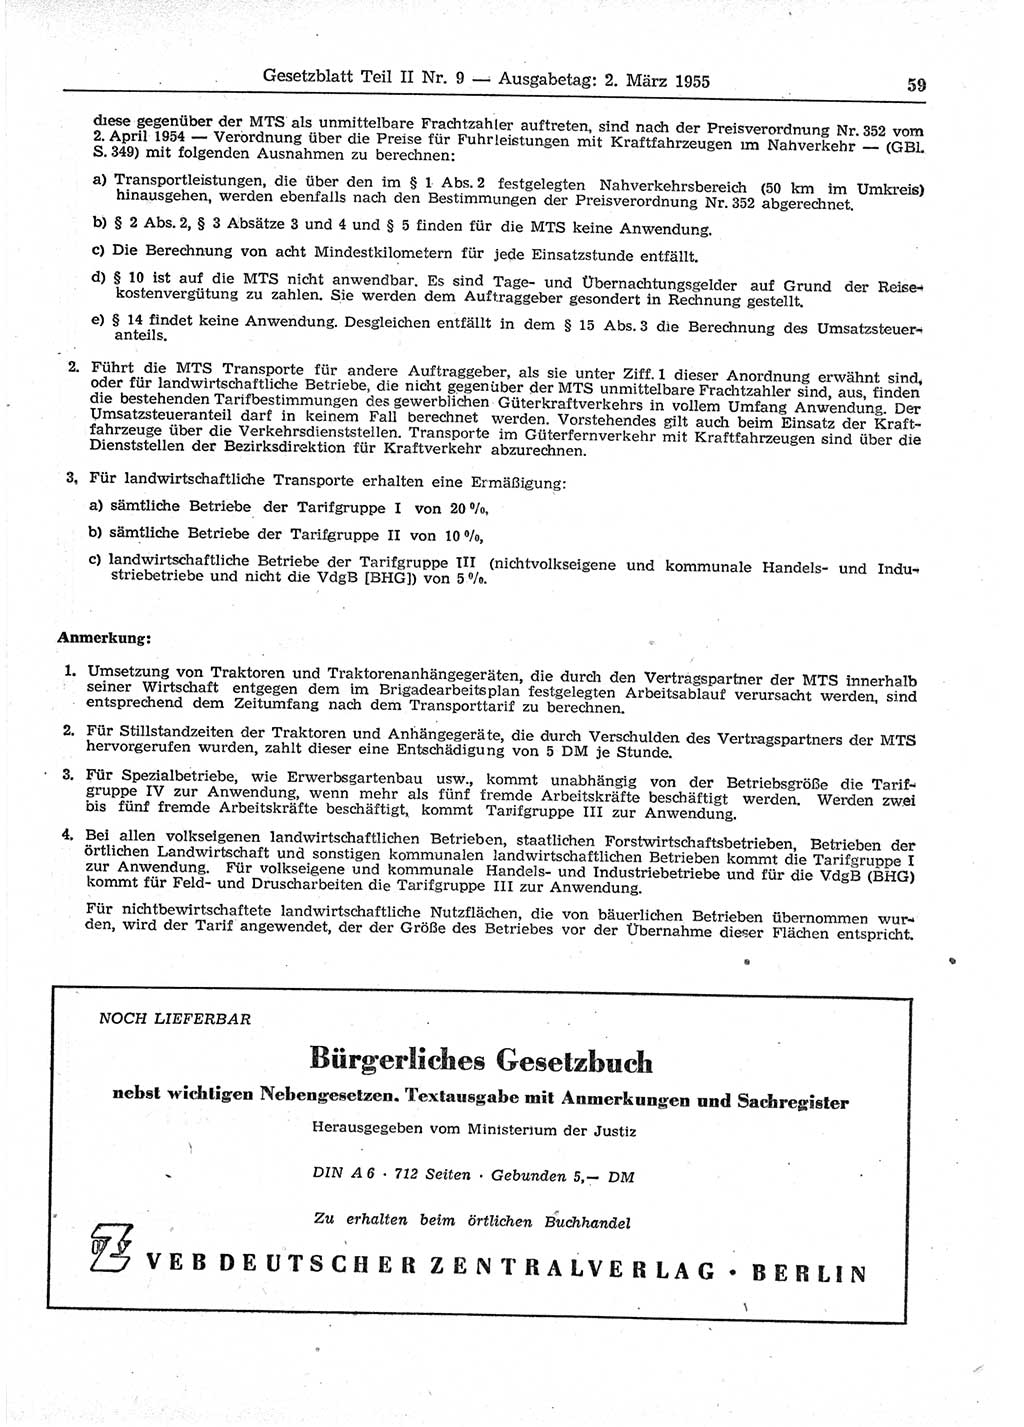 Gesetzblatt (GBl.) der Deutschen Demokratischen Republik (DDR) Teil ⅠⅠ 1955, Seite 59 (GBl. DDR ⅠⅠ 1955, S. 59)